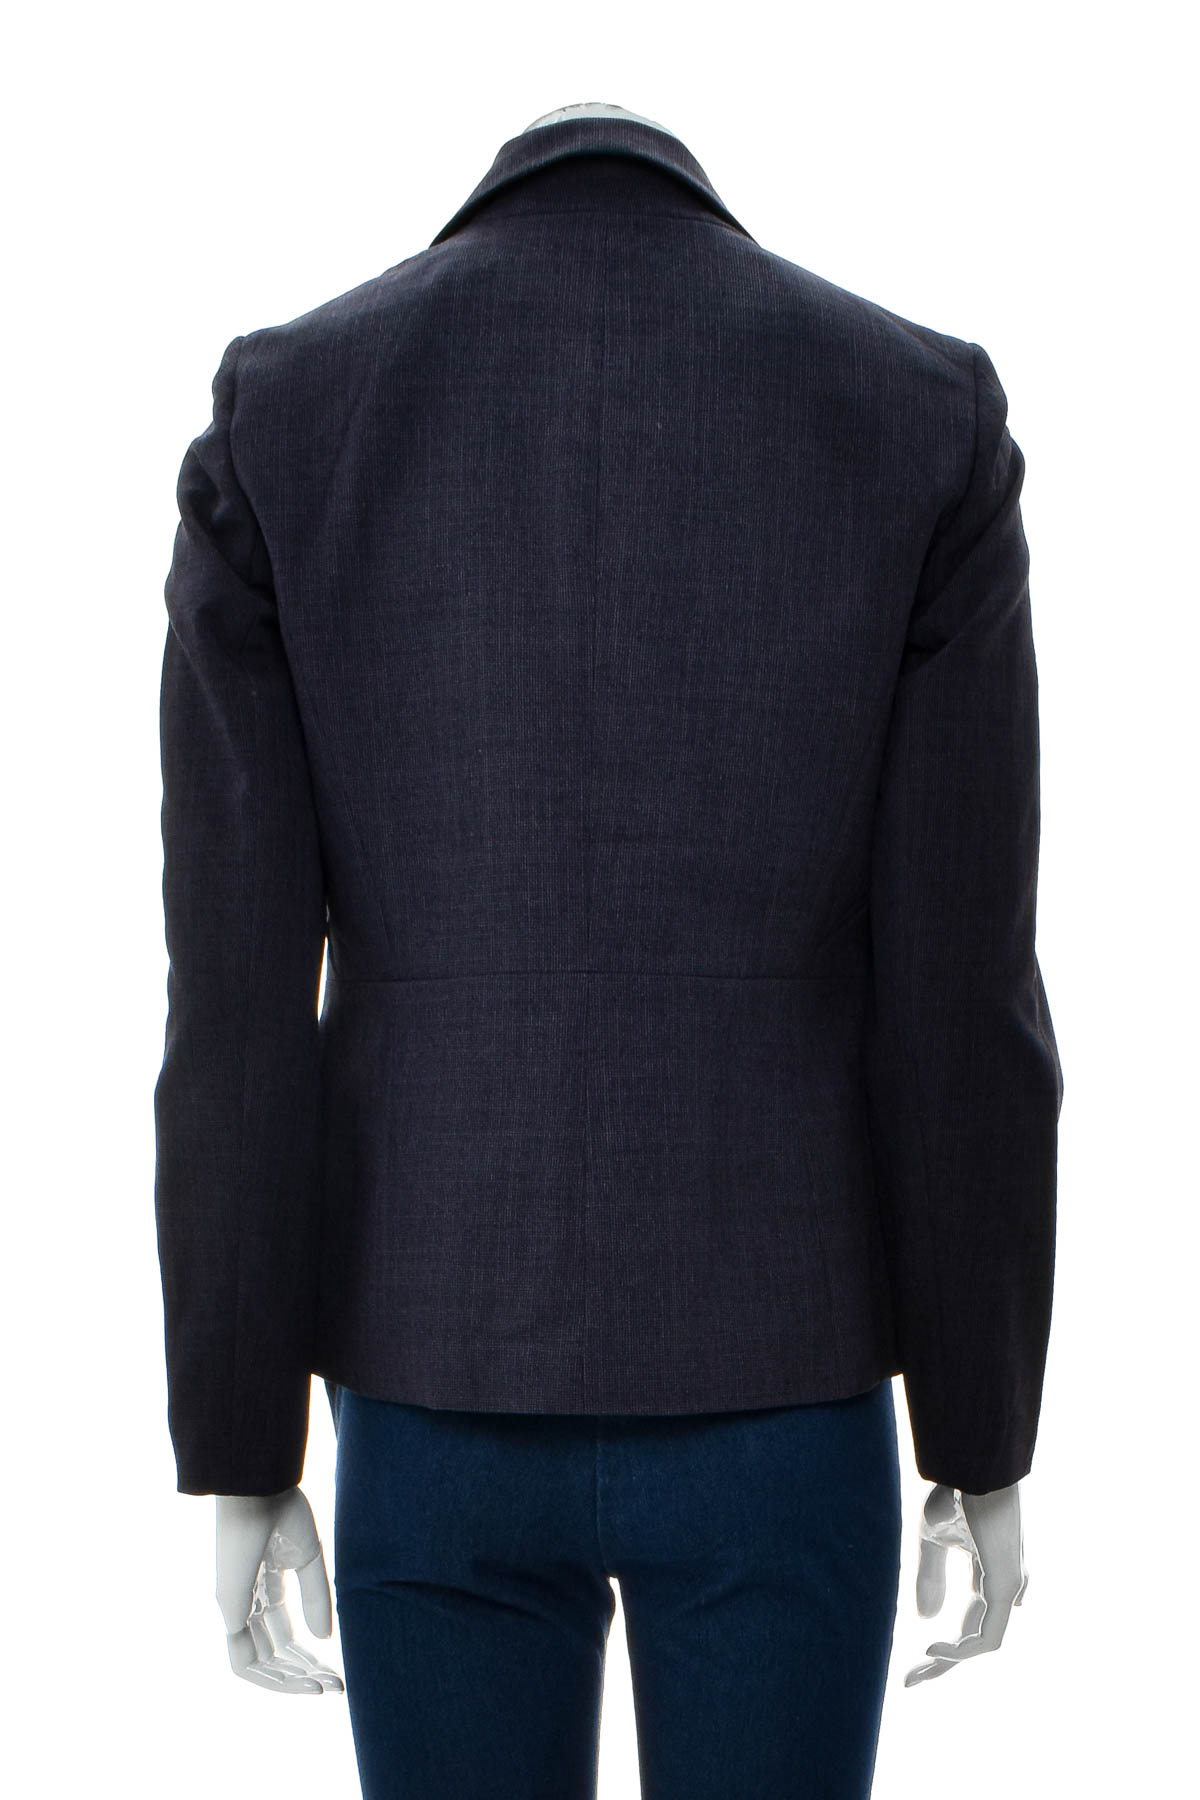 Women's blazer - Le Suit Petite - 1